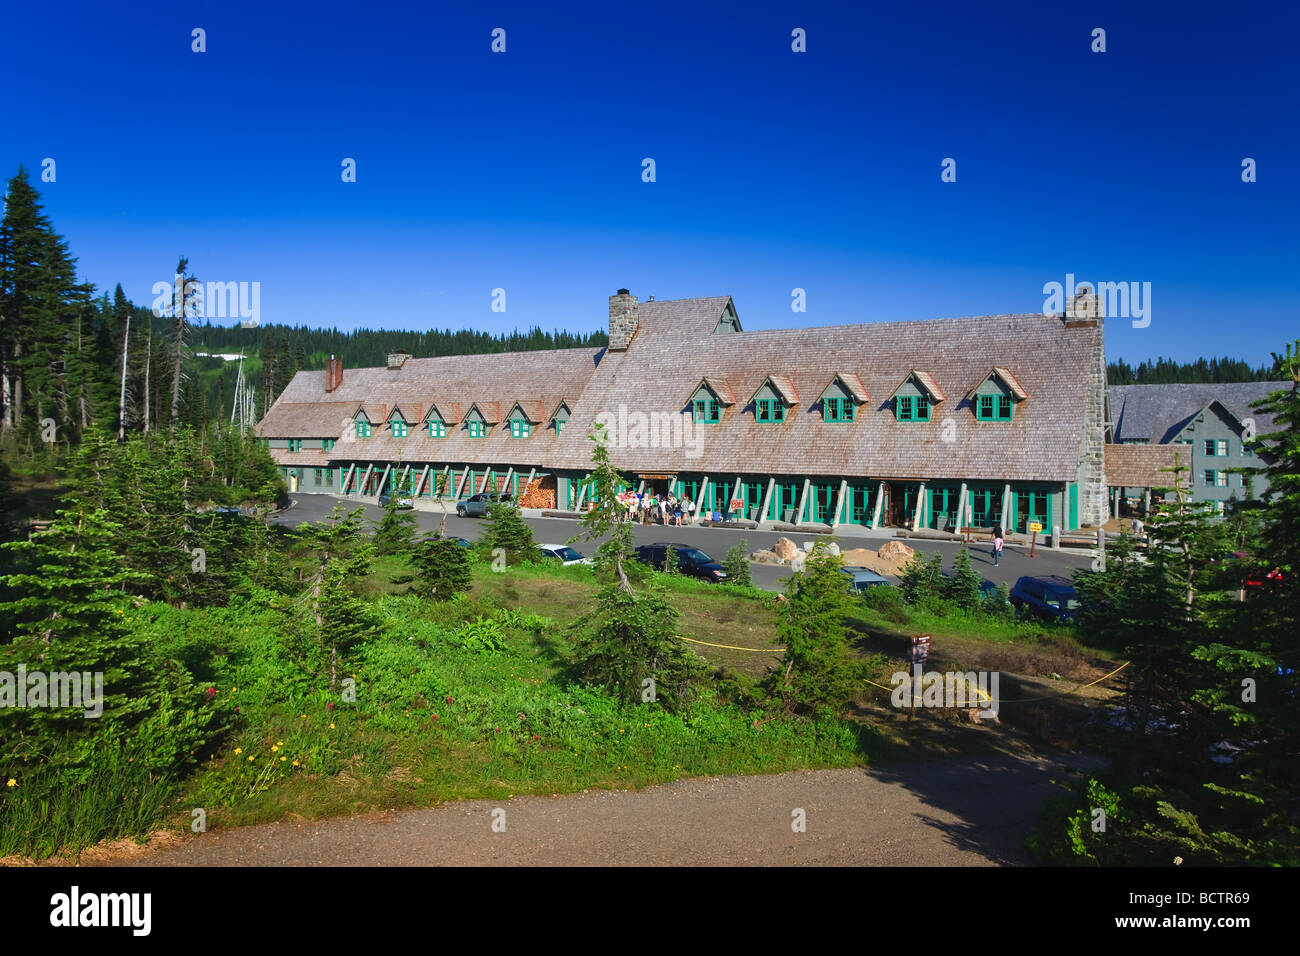 Paradise Inn lodge at Mount Rainier Washington State USA Stock Photo